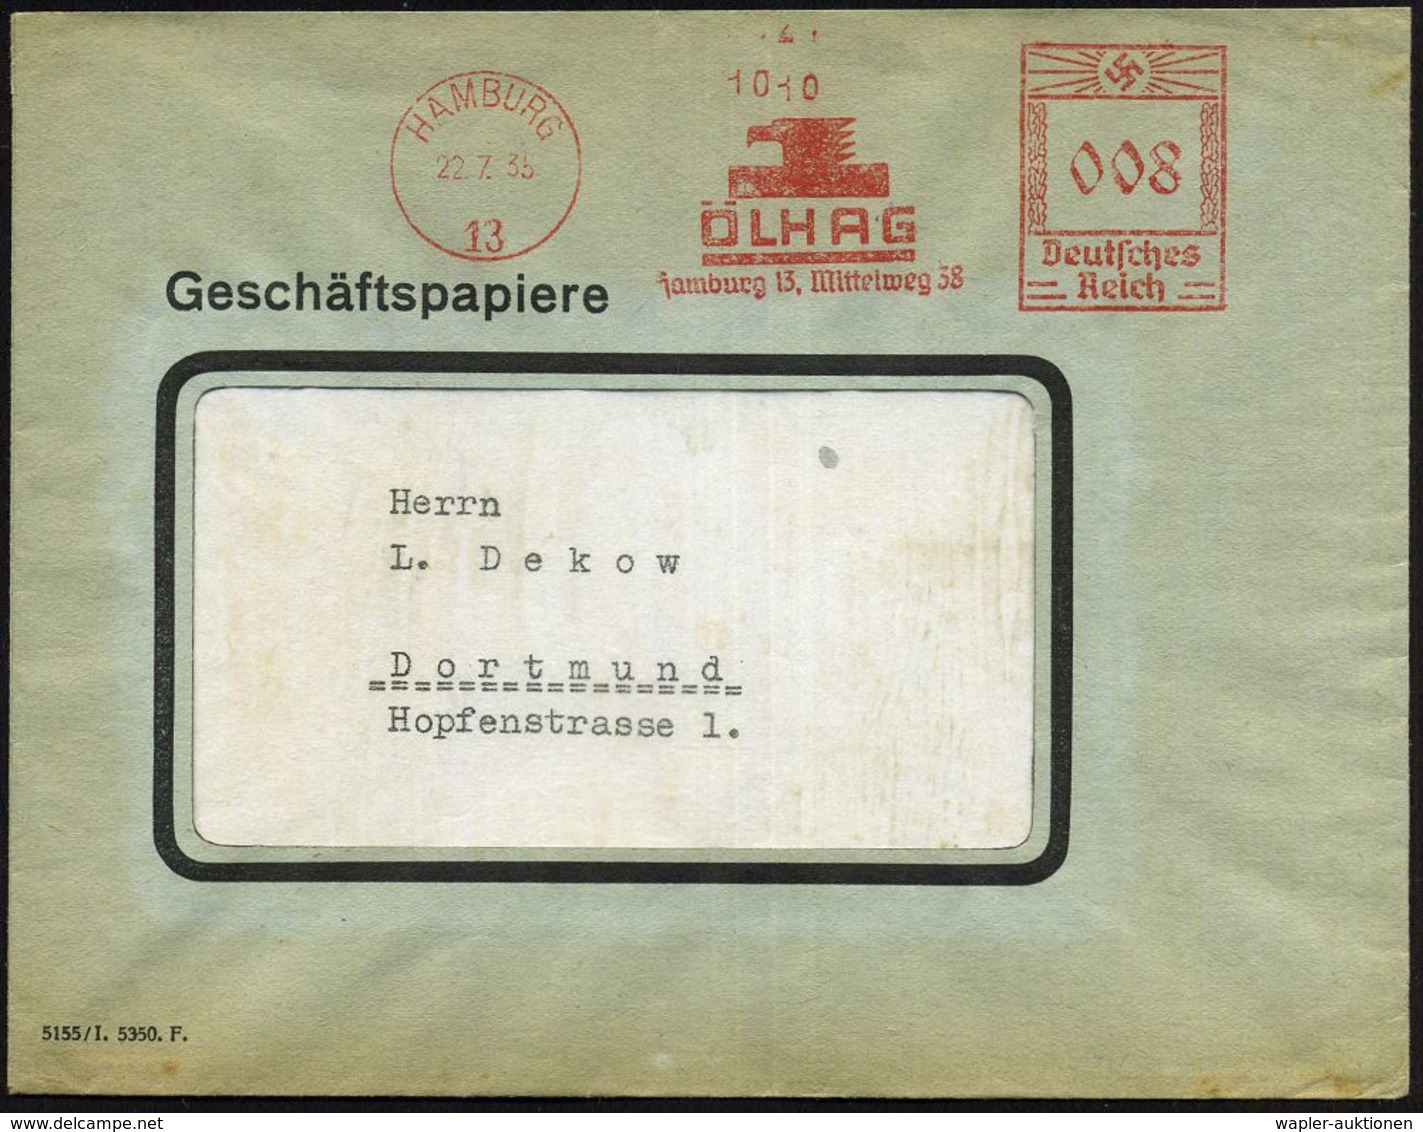 HAMBURG/ 13/ ÖLHAG.. 1935 (22.7.) AFS (Adlerkopf-Logo) Inl.-Bf. (Dü.E-3BAh) - CHEMIE / PRODUKTE / CHEMISCHE INDUSTRIE -  - Chimie